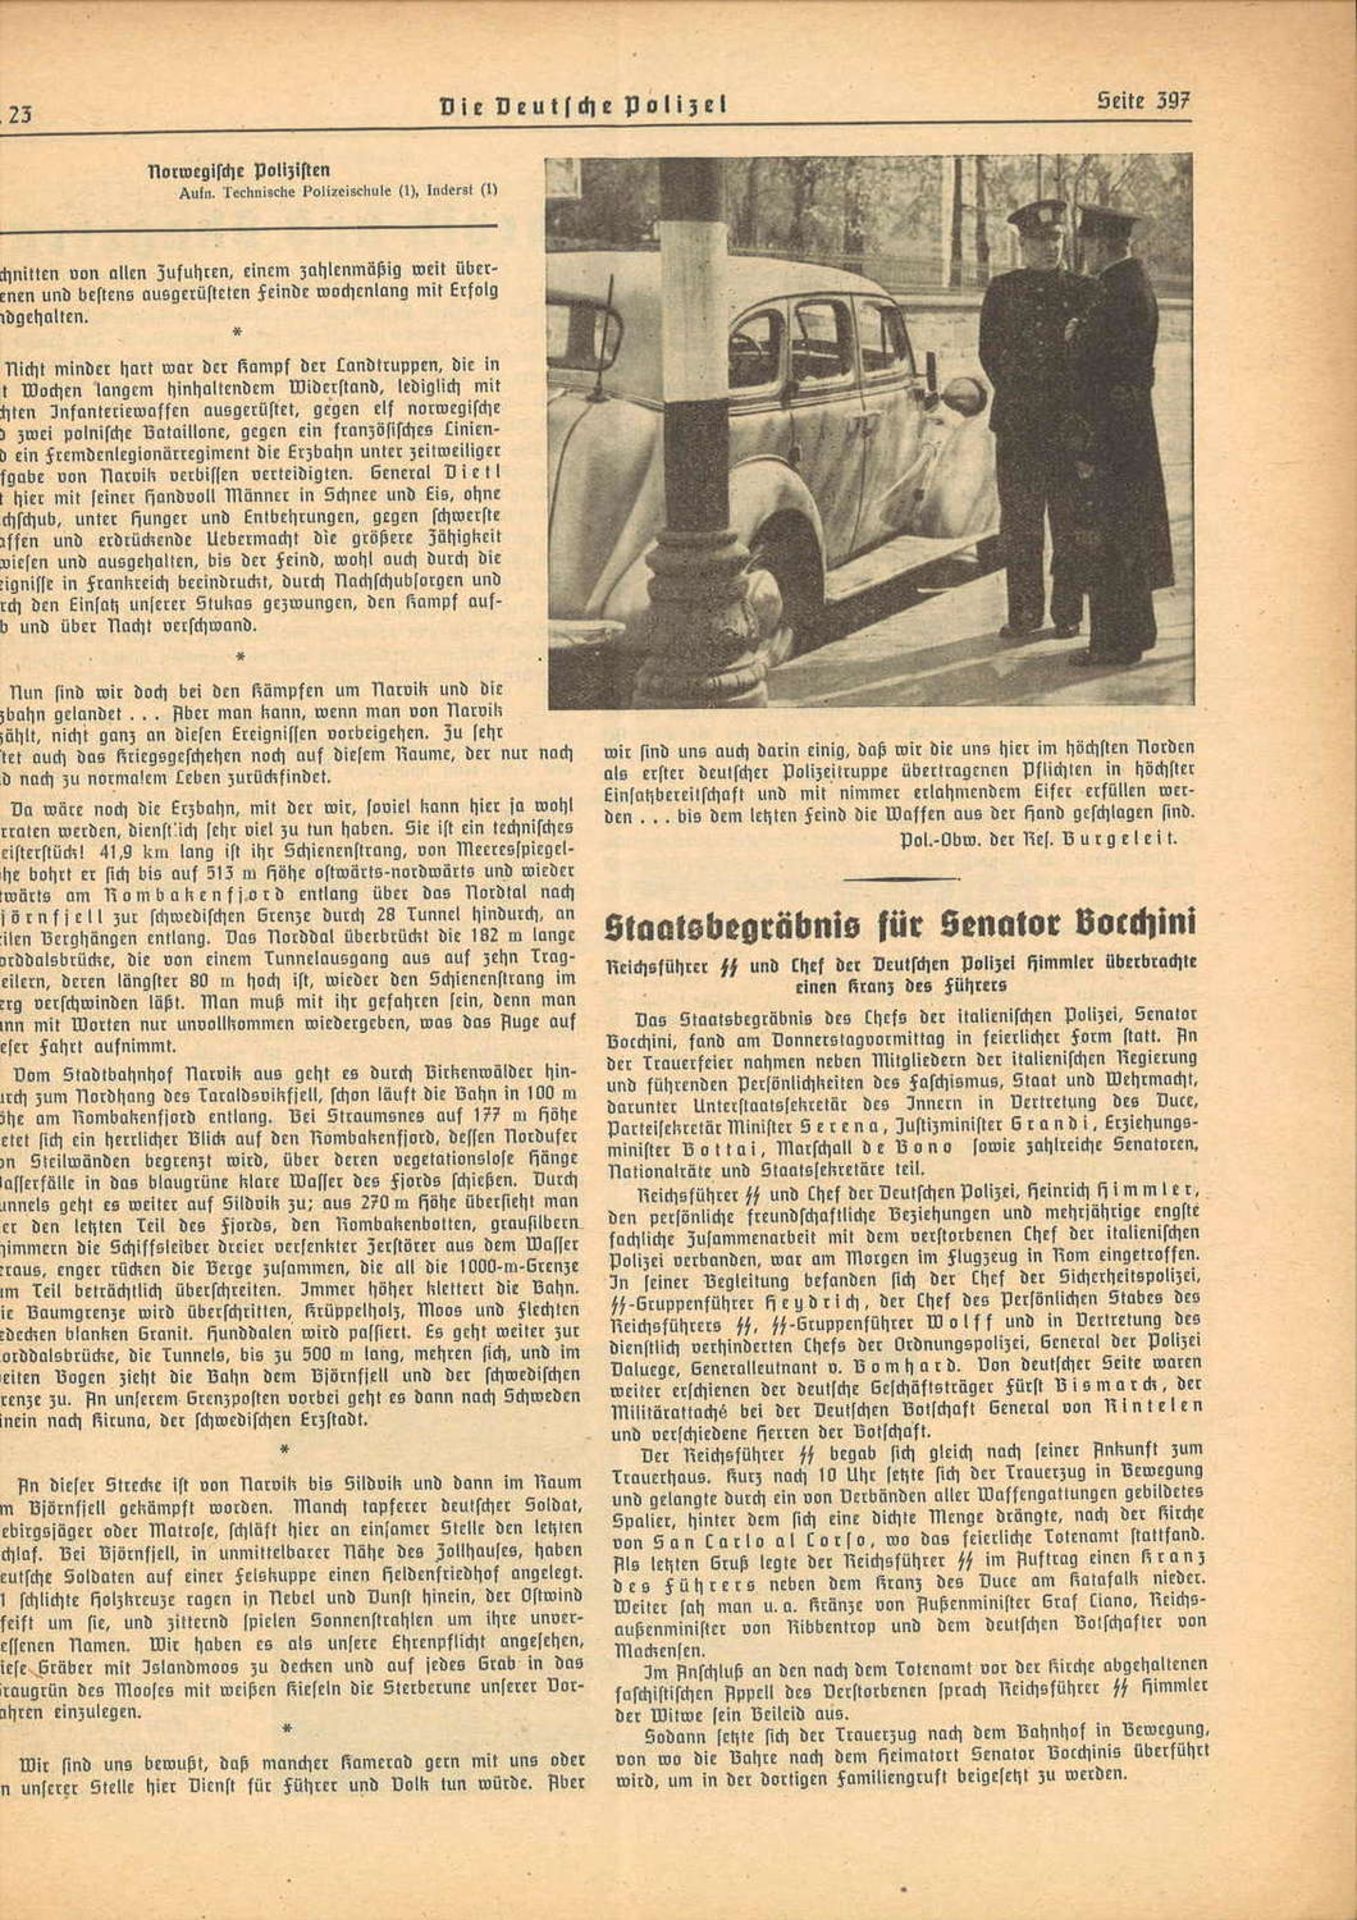 Die Deutsche Polizei. Herausgegeben im Auftrage des Reichsführers SS und Chefs der Deutschen - Bild 2 aus 2